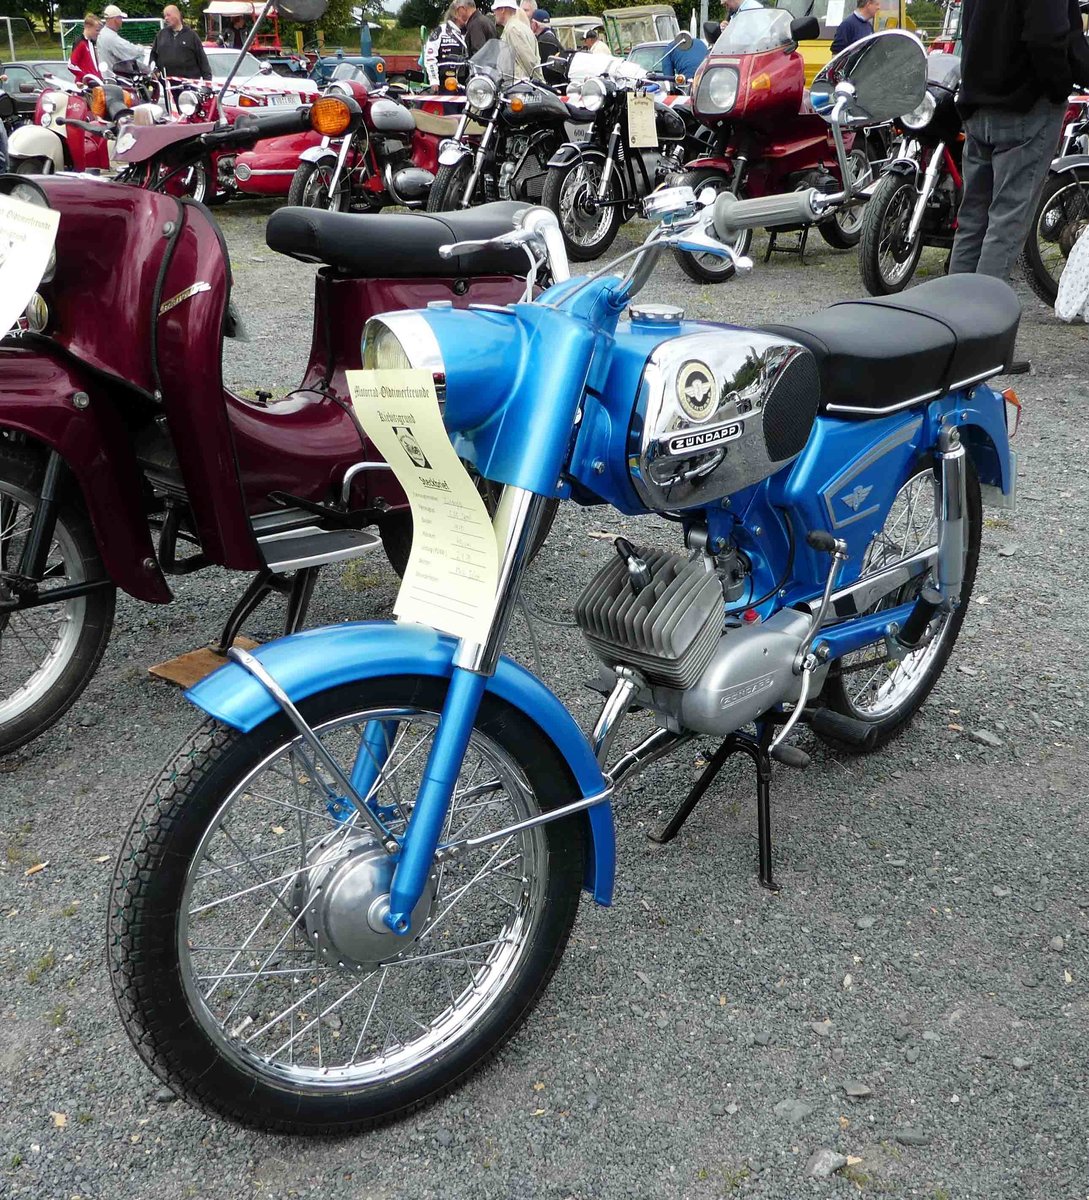 =Zündapp C 50 Sport, Bj. 1970, gesehen bei den Motorrad-Oldtimer-Freunden Kiebitzgrund im Juni 2018
